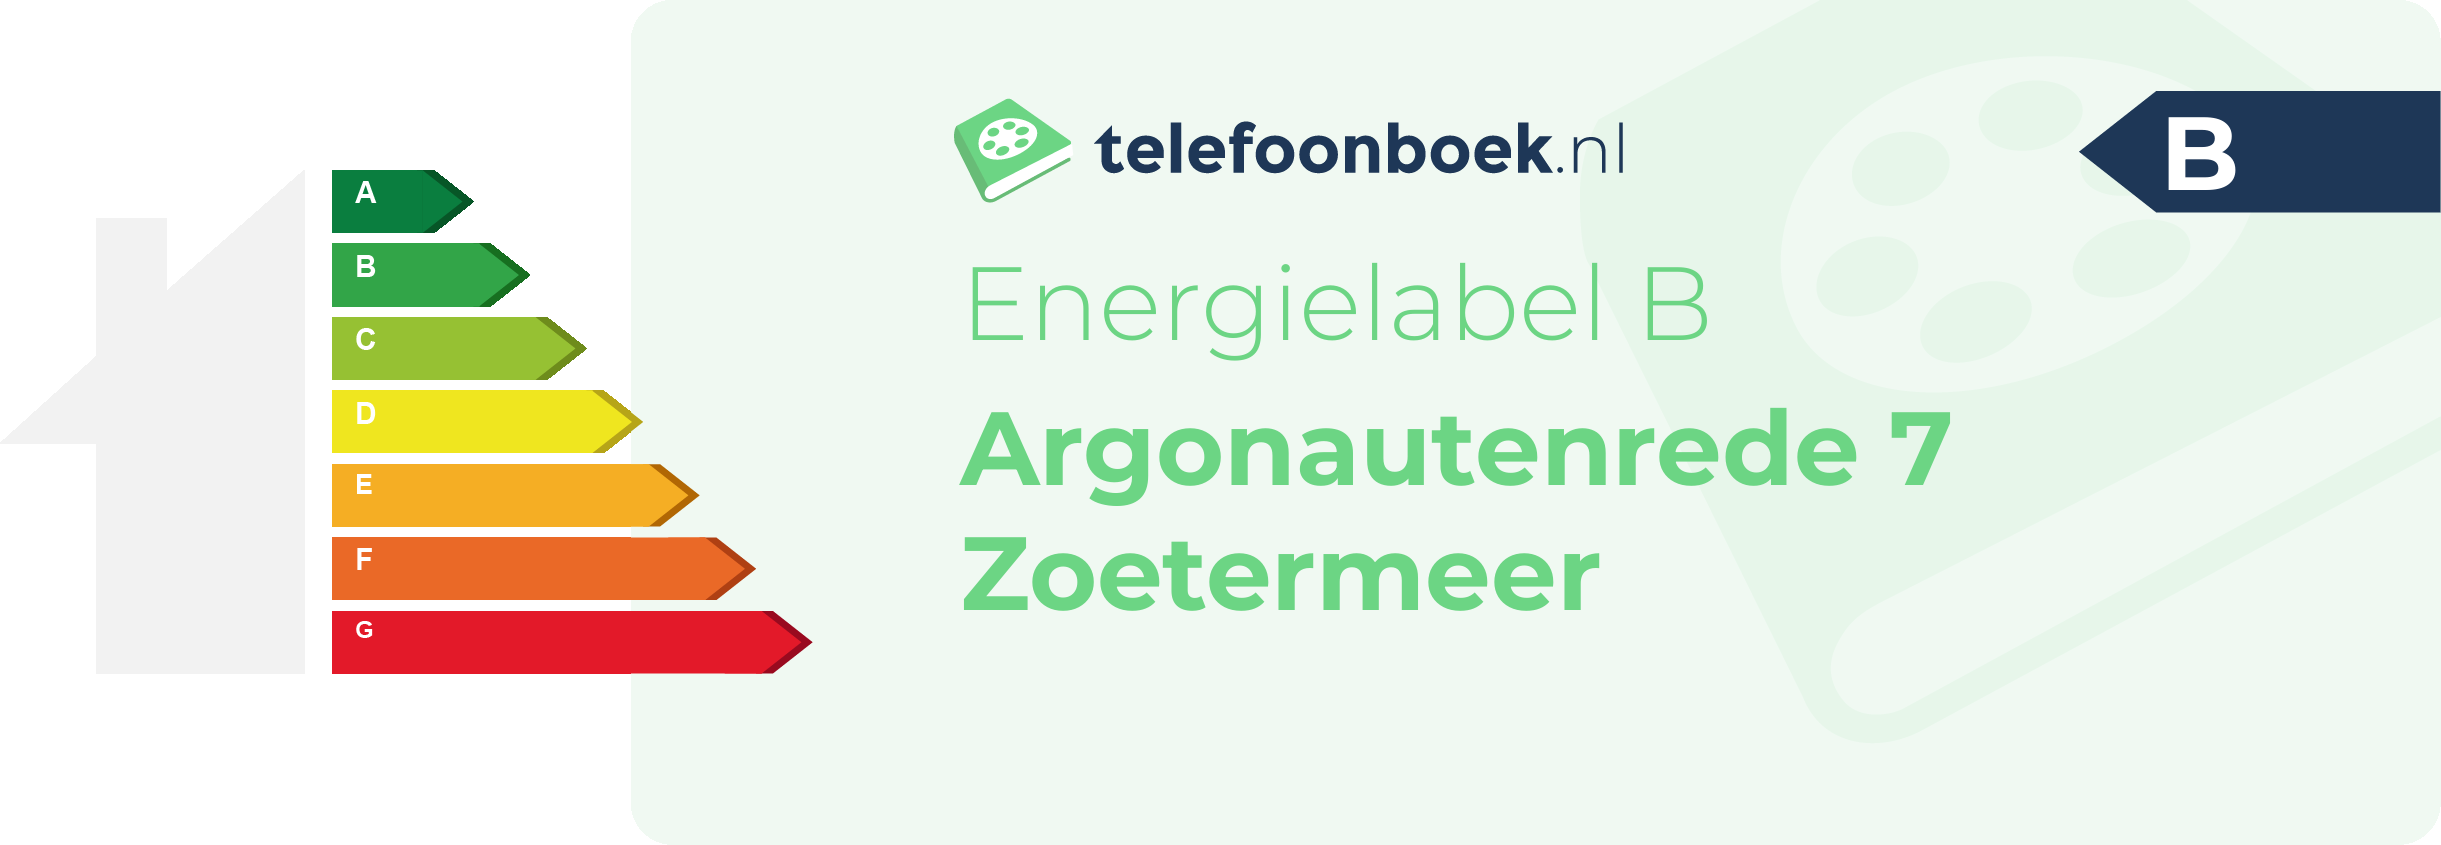 Energielabel Argonautenrede 7 Zoetermeer